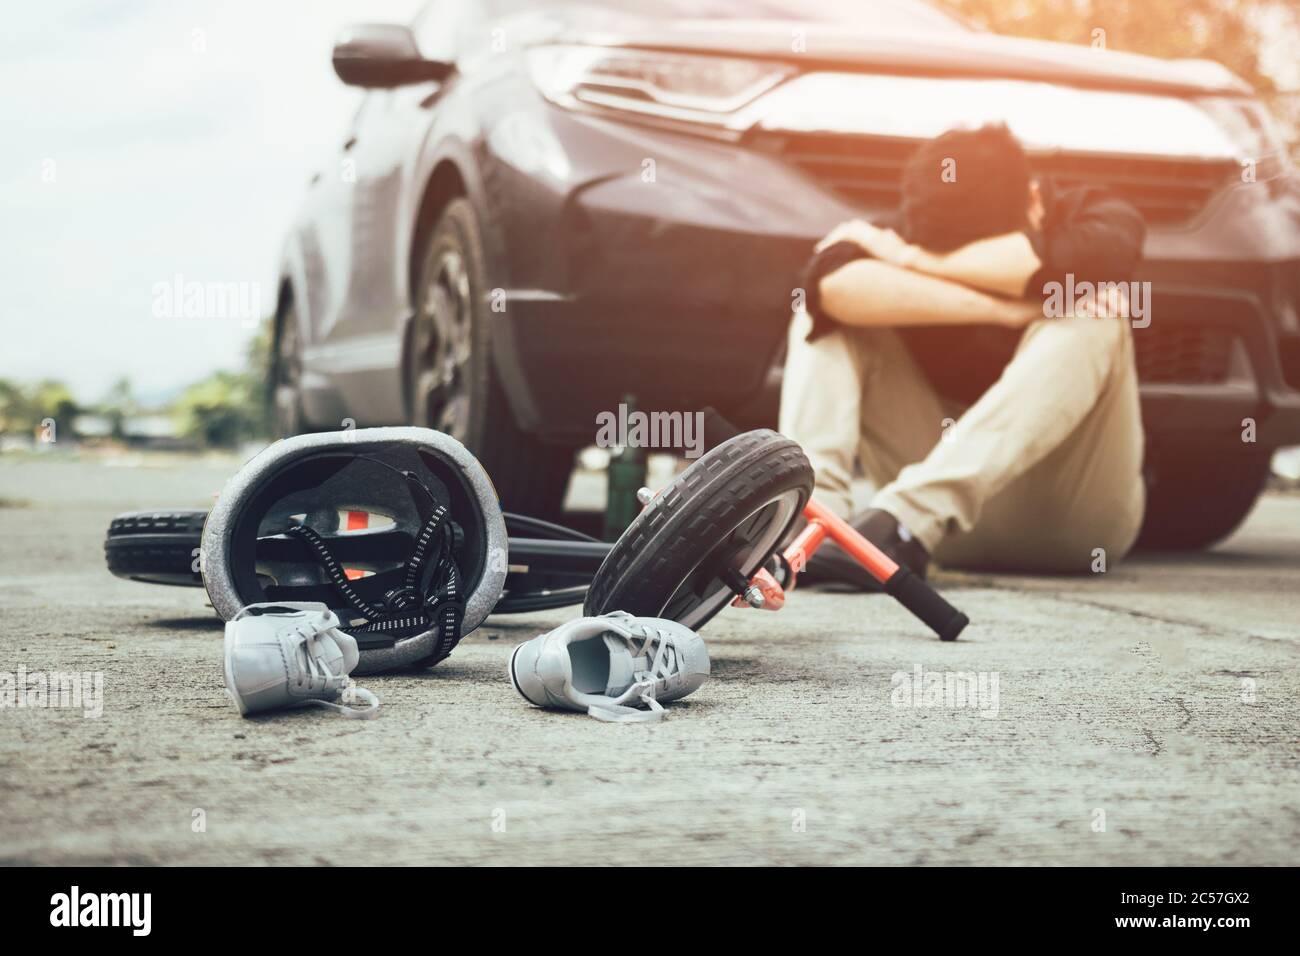 Unfall, der Mann, der Alkohol trank und Stress mit Crash Kind Fahrrad auf  dem Boden betrunken aufgetreten Stockfotografie - Alamy